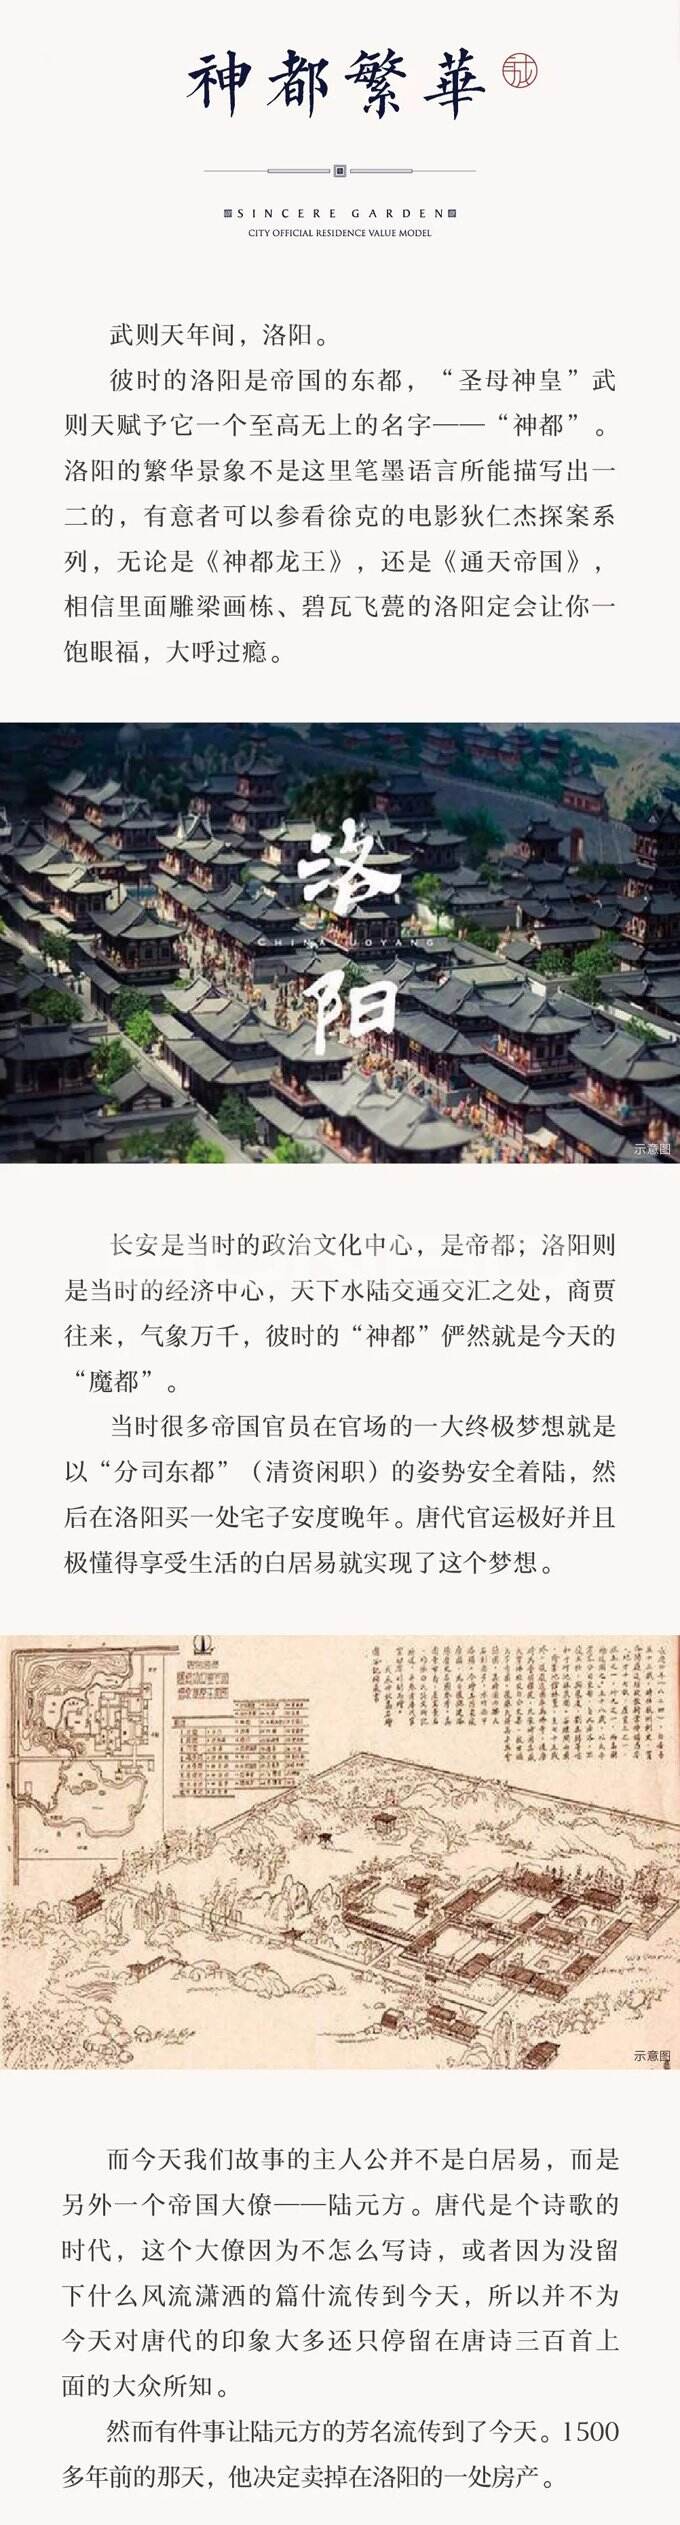 绿城枣庄诚园官方公众号推送微信稿《诚周刊》